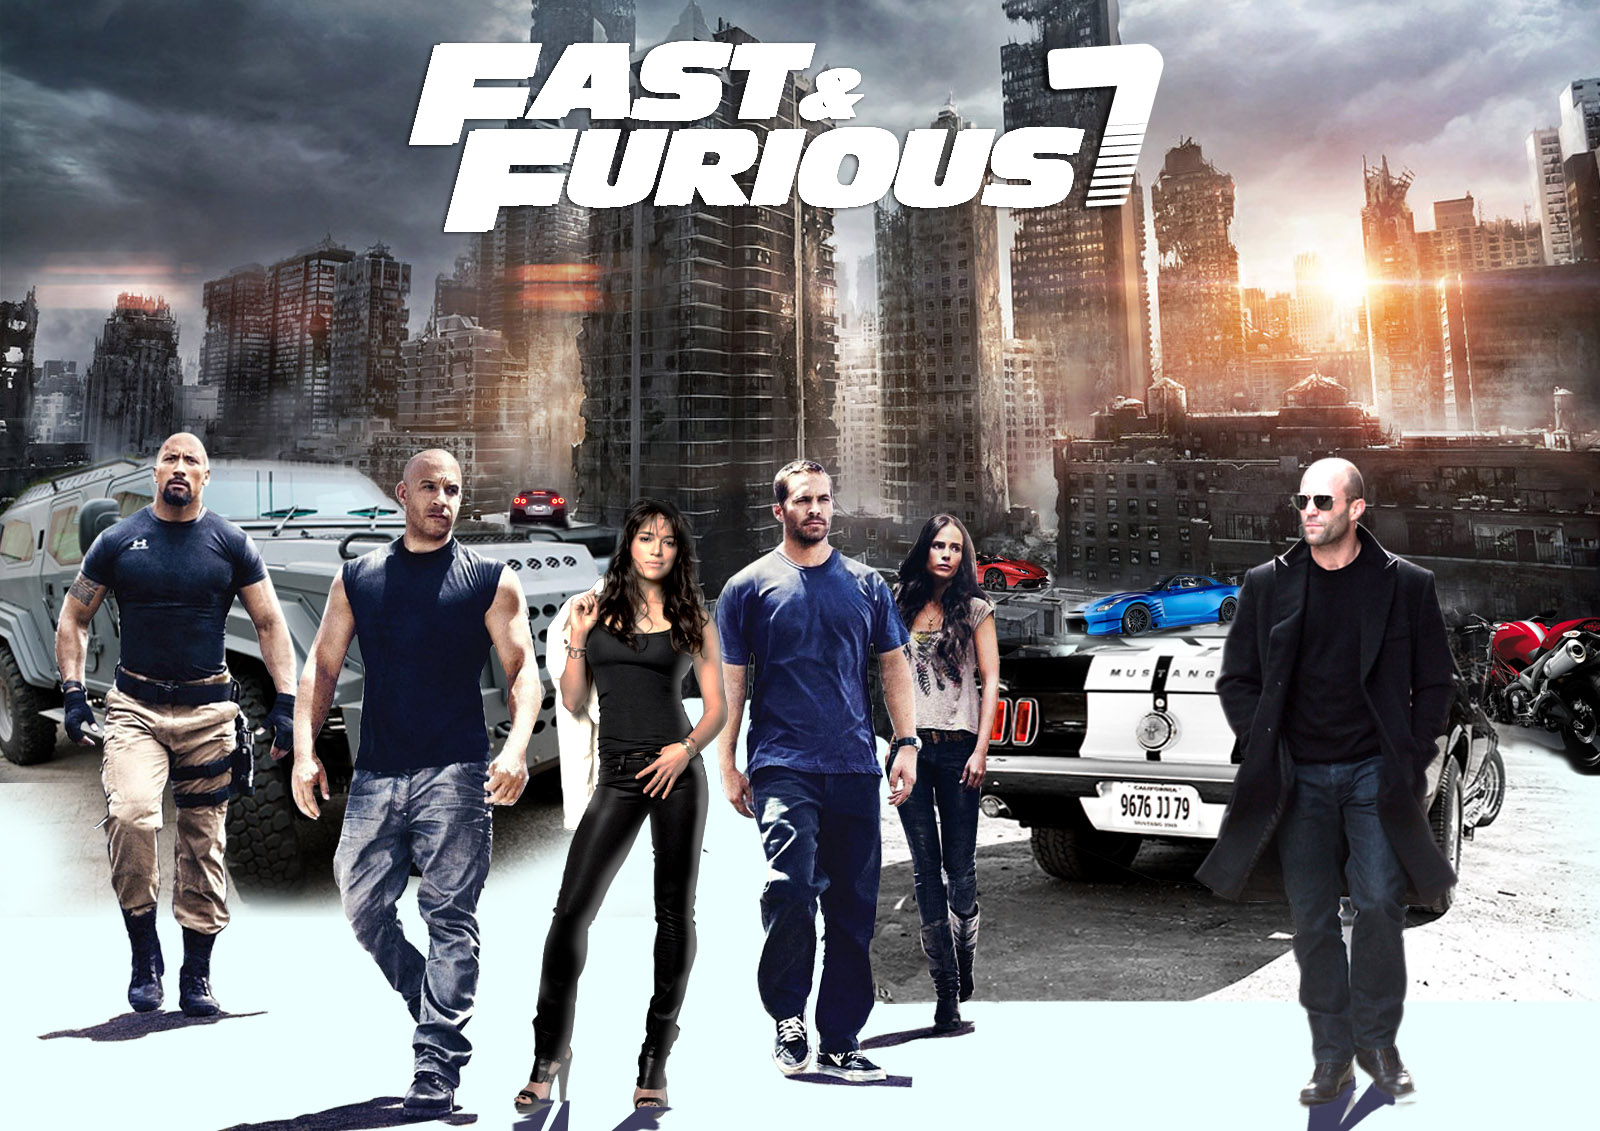  Quá nhanh, Quá nguy hiểm - Phần 7 là một phim hành động năm 2015 của Mỹ. Đây là phần tiếp theo của bộ phim năm 2013 Fast & Furious 6 và cũng là bộ phim thứ bảy trong loạt phim Fast & Furious.